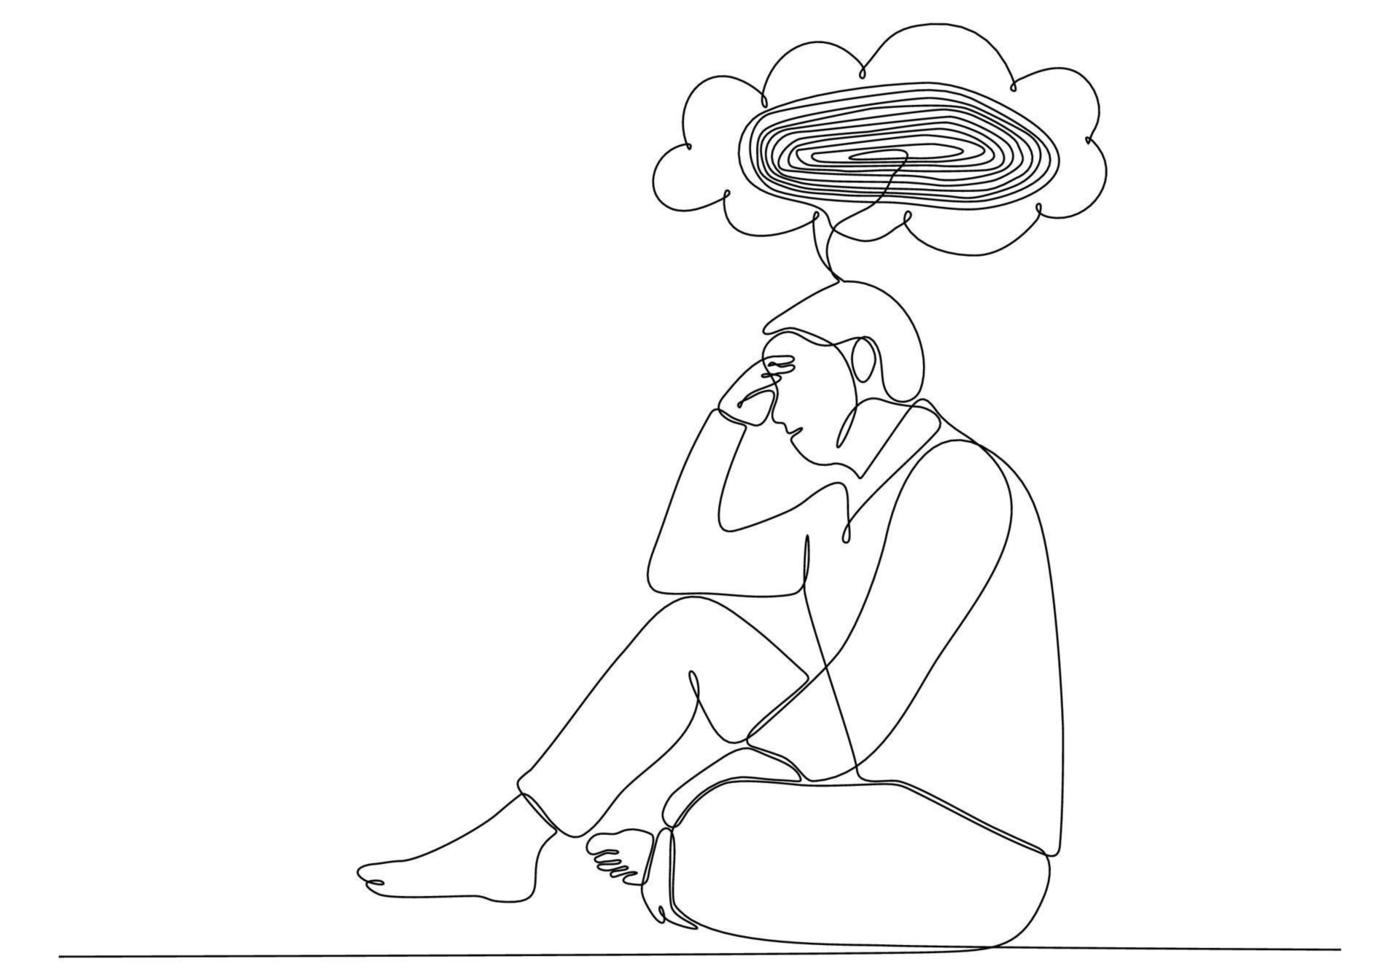 kontinuerlig linjeteckning av ung man som känner sig ledsen, trött och orolig som lider av depression i psykisk hälsa vektorillustration vektor